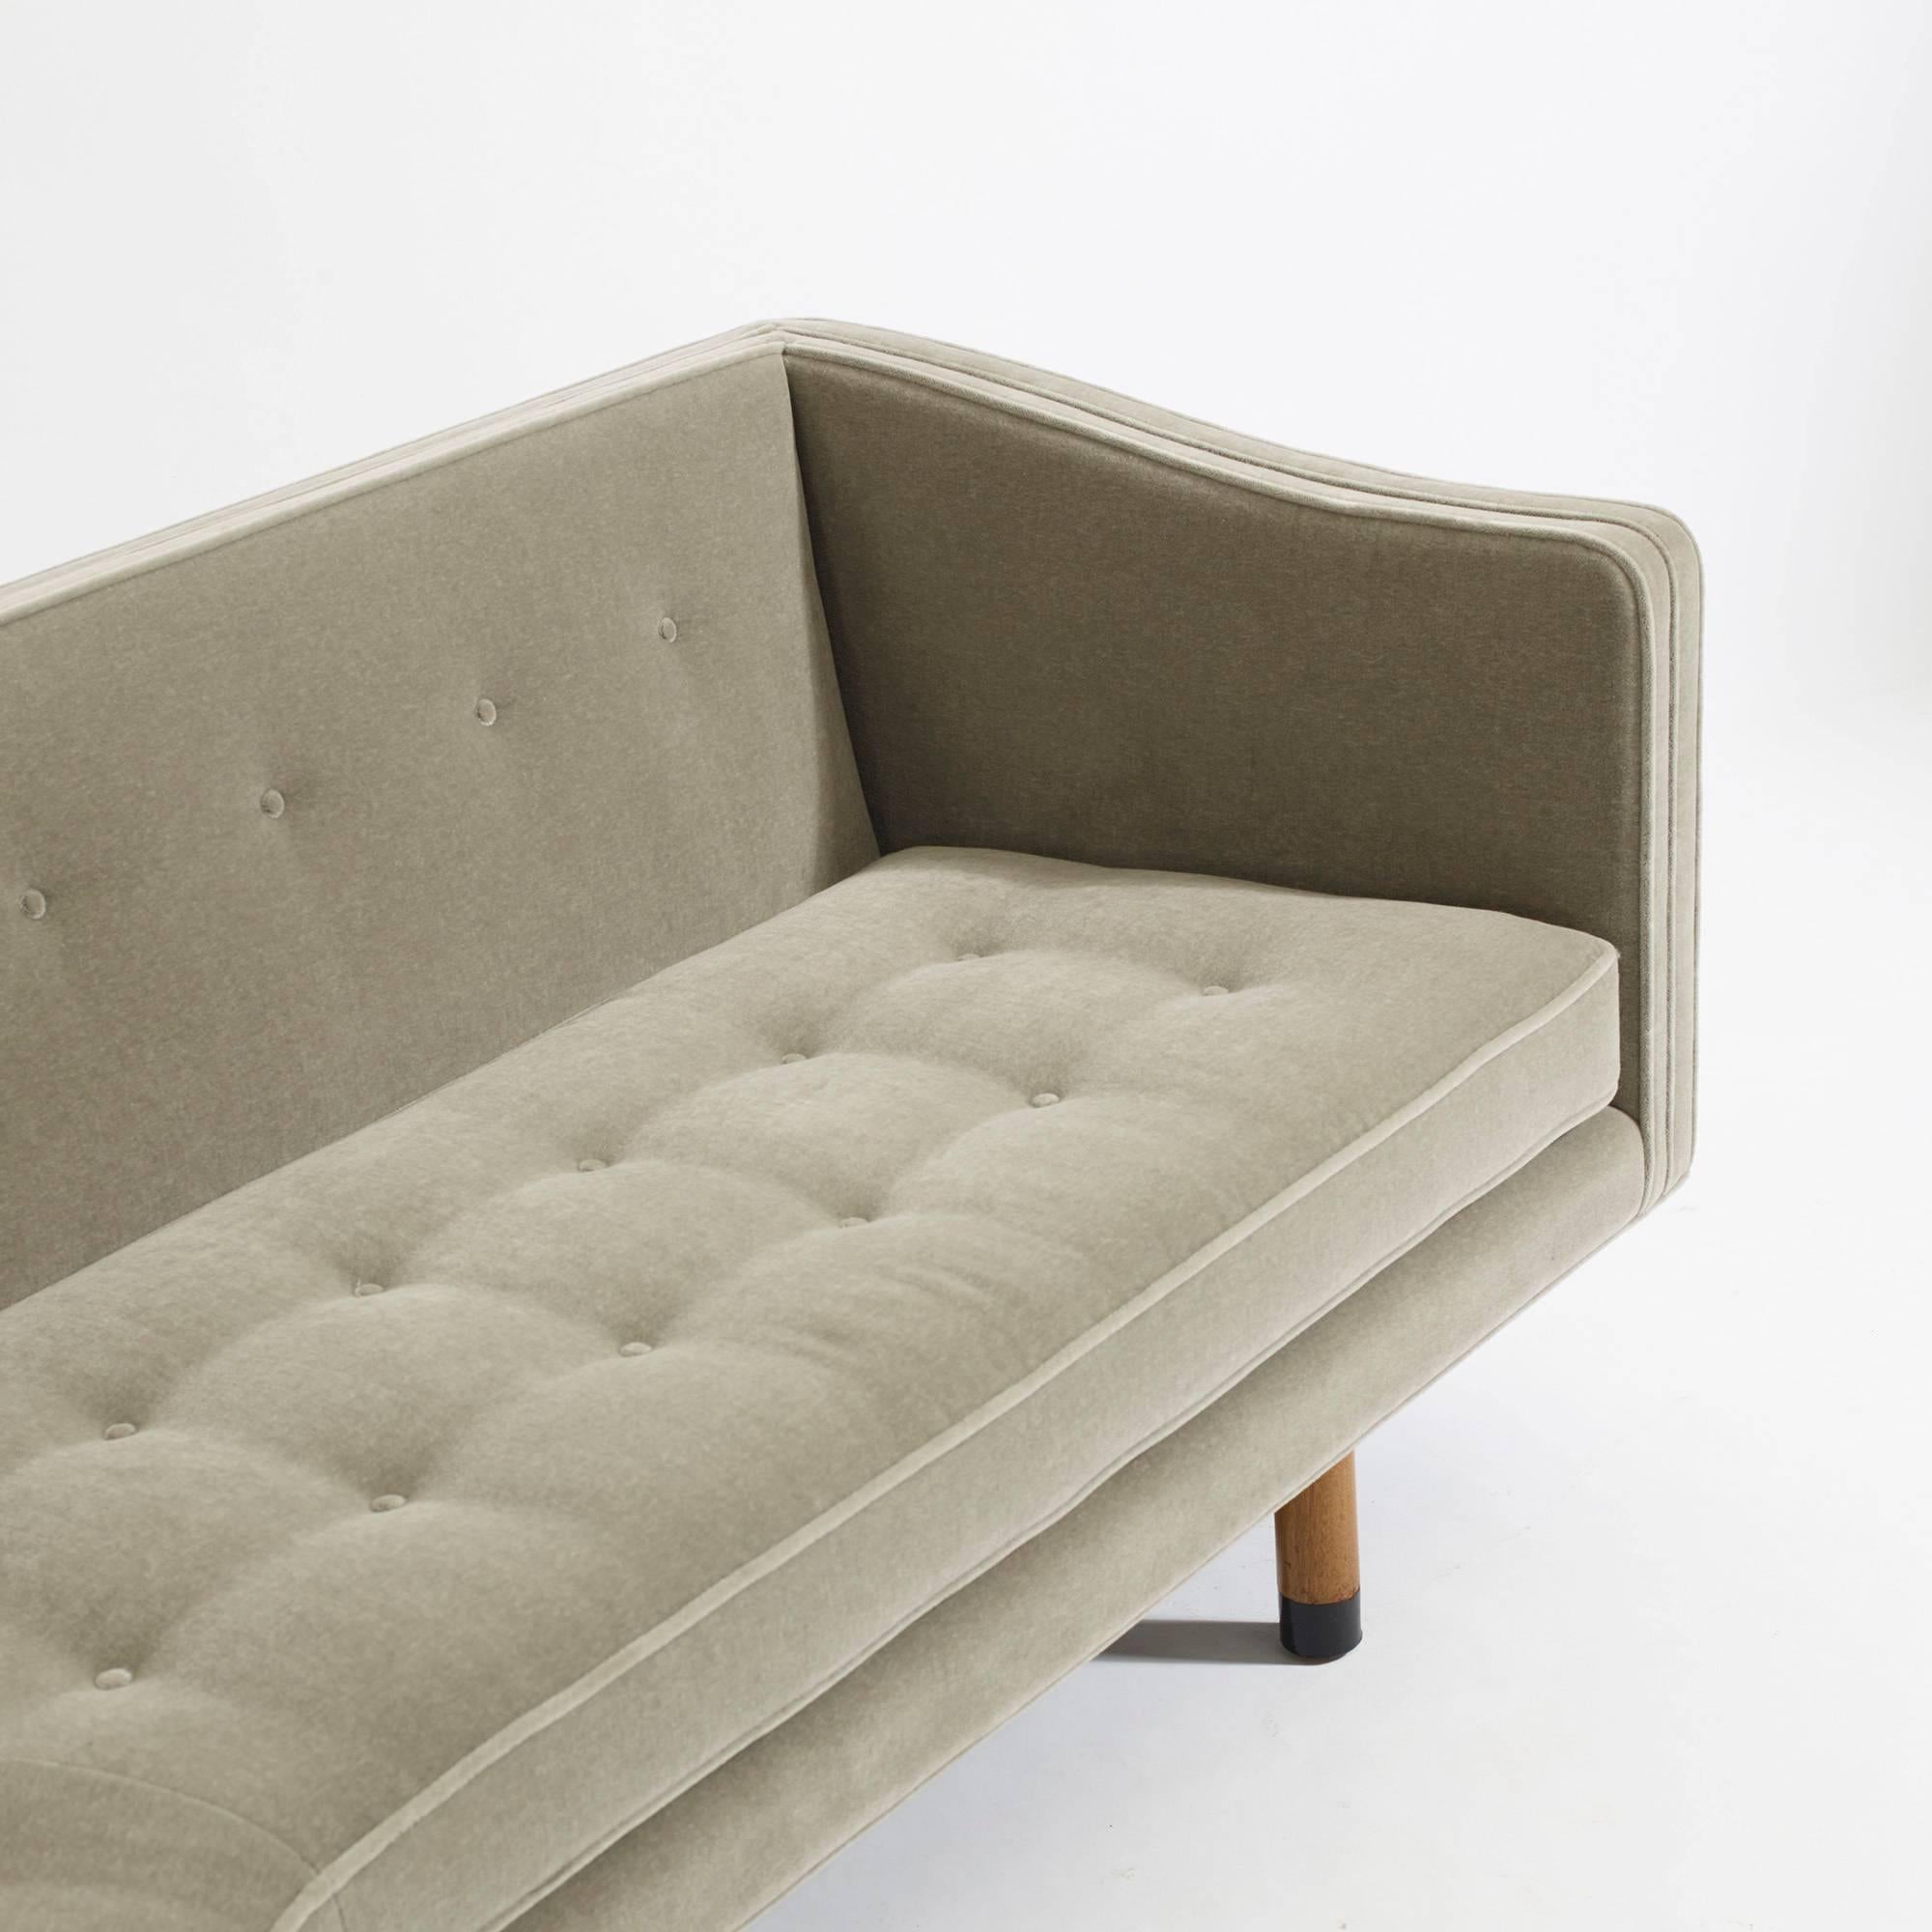 American Sofa, Model 5305 by Edward Wormley for Dunbar